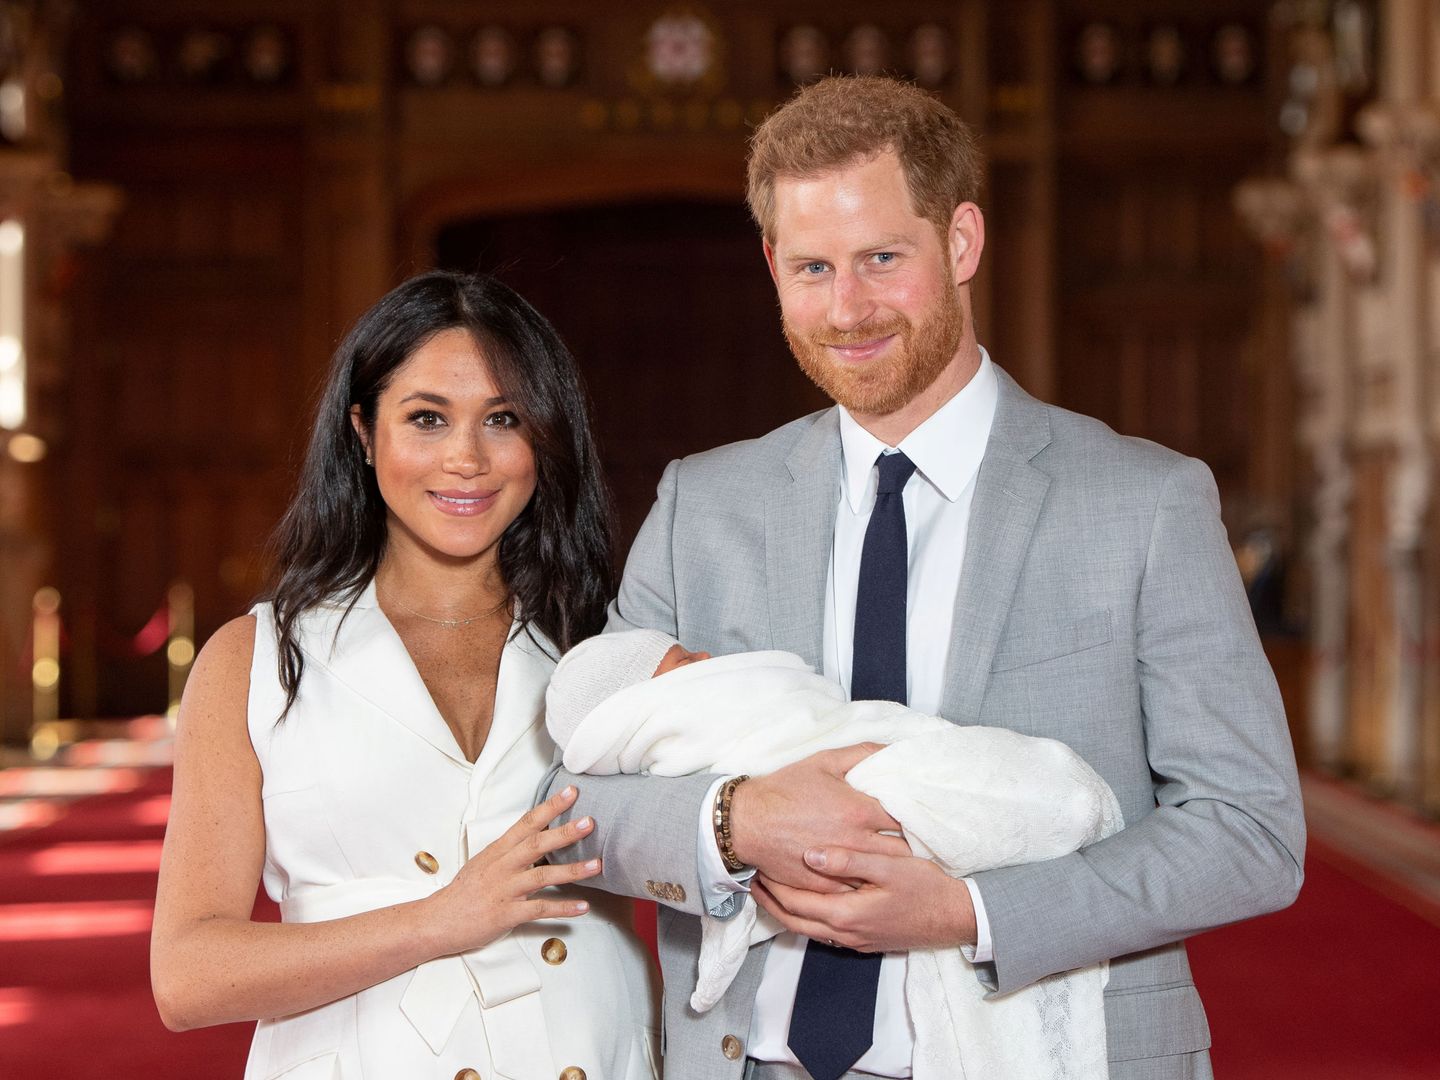 Presentación oficial del primer hijo del príncipe Harry y Meghan Markle. (Reuters)